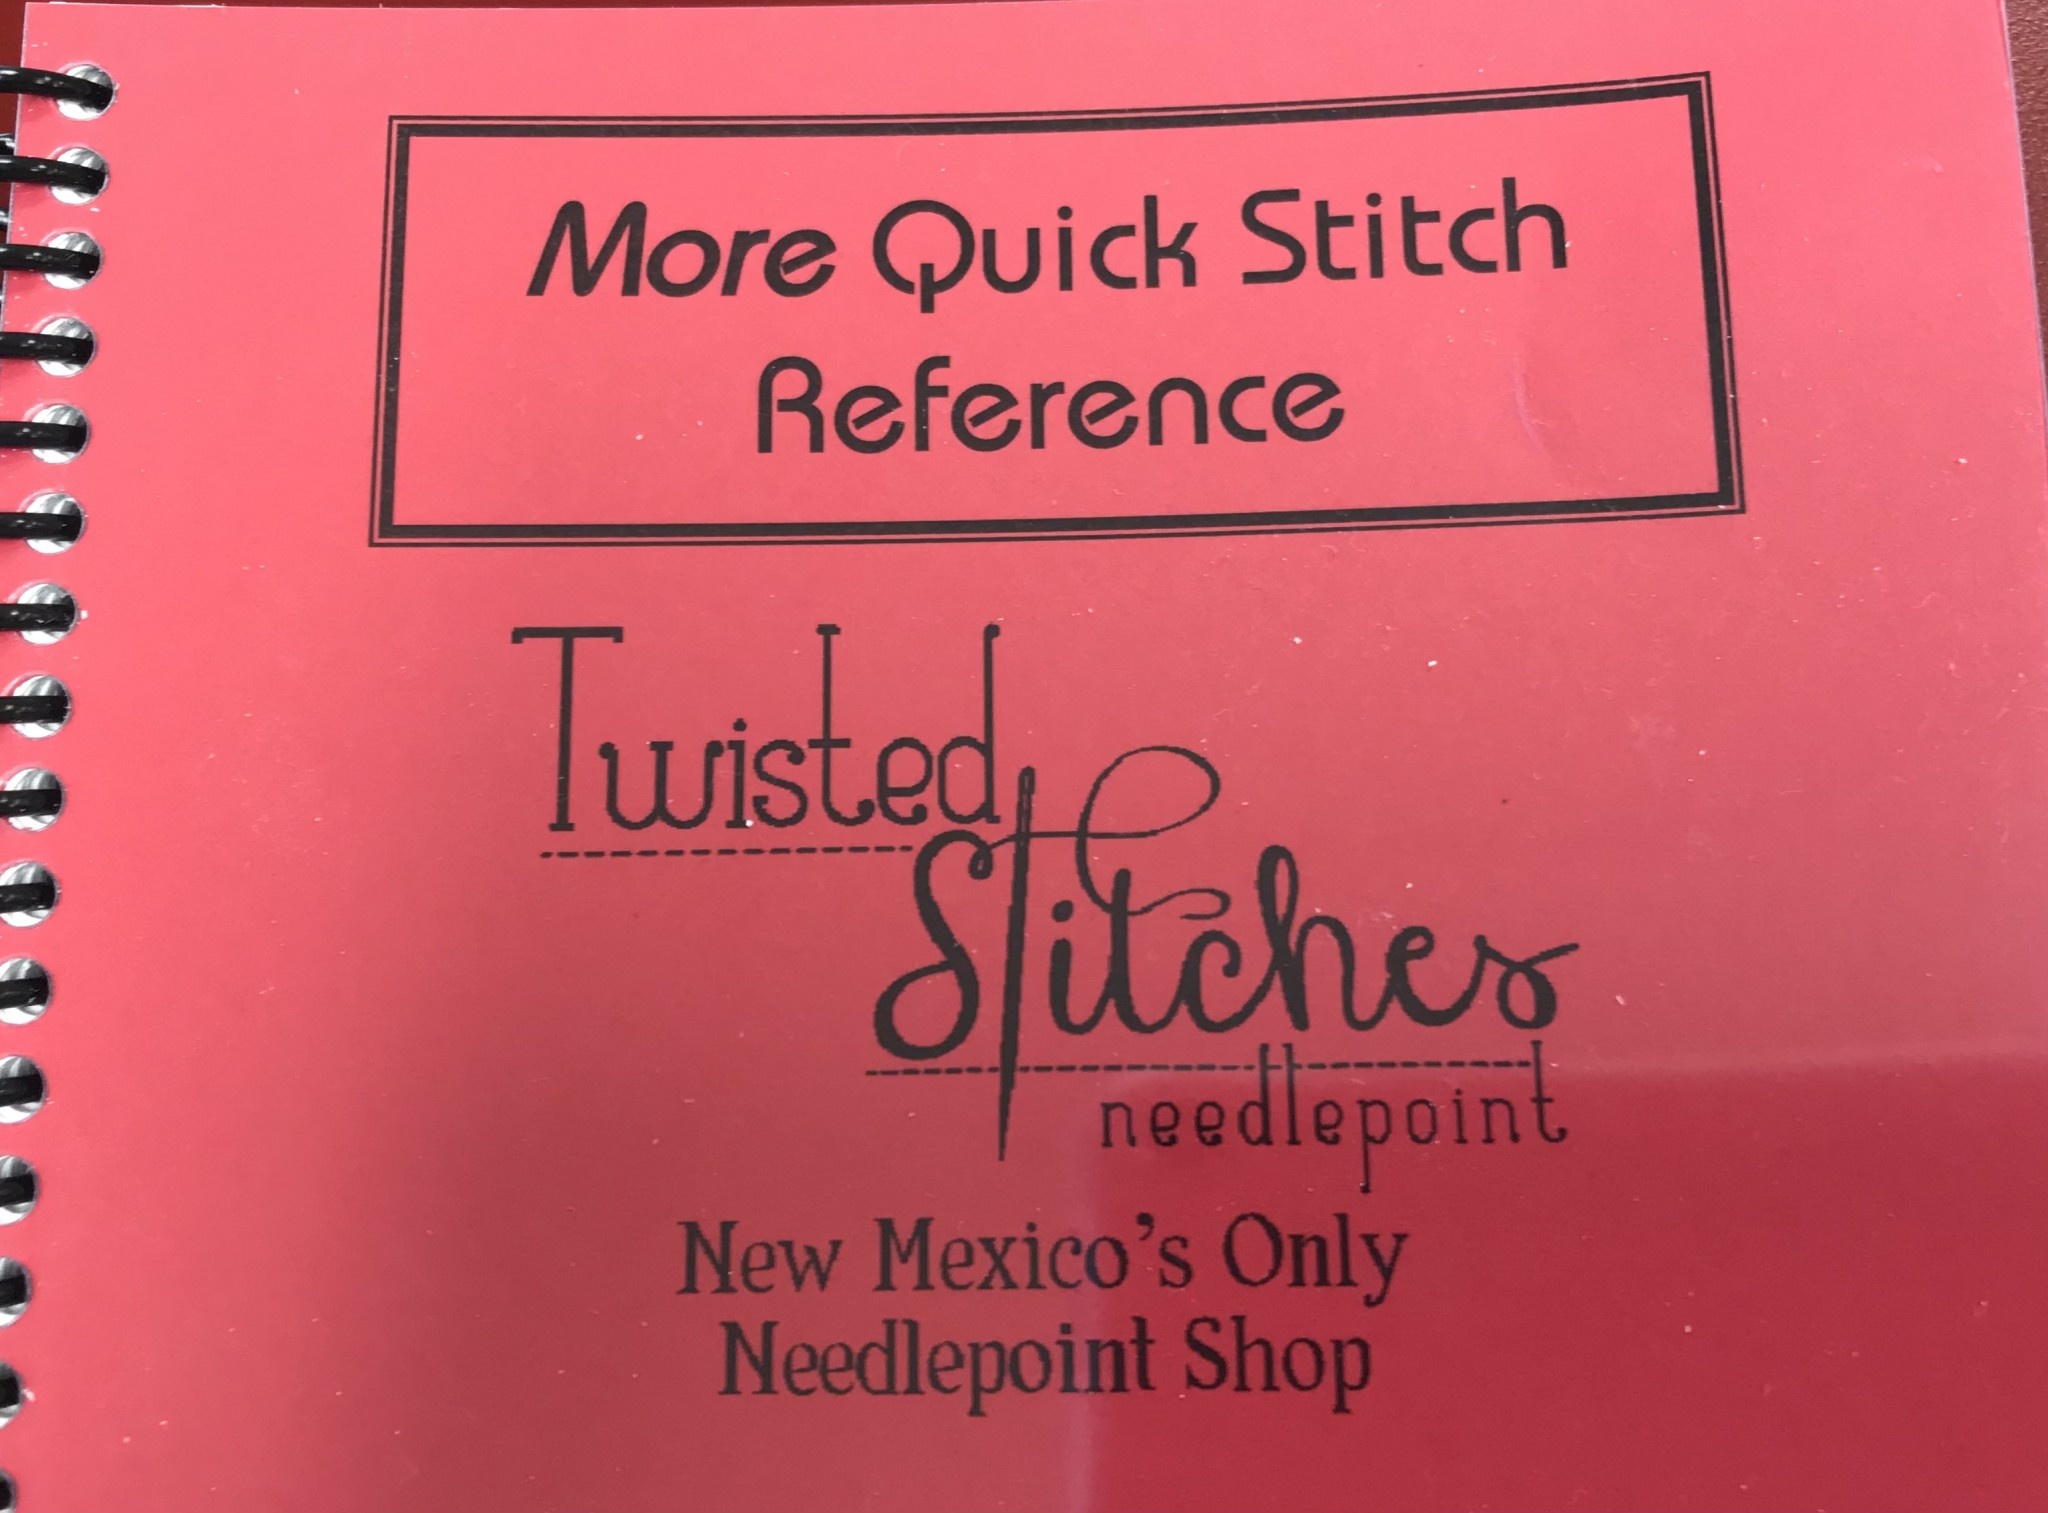 STITCH - a needlepoint shop